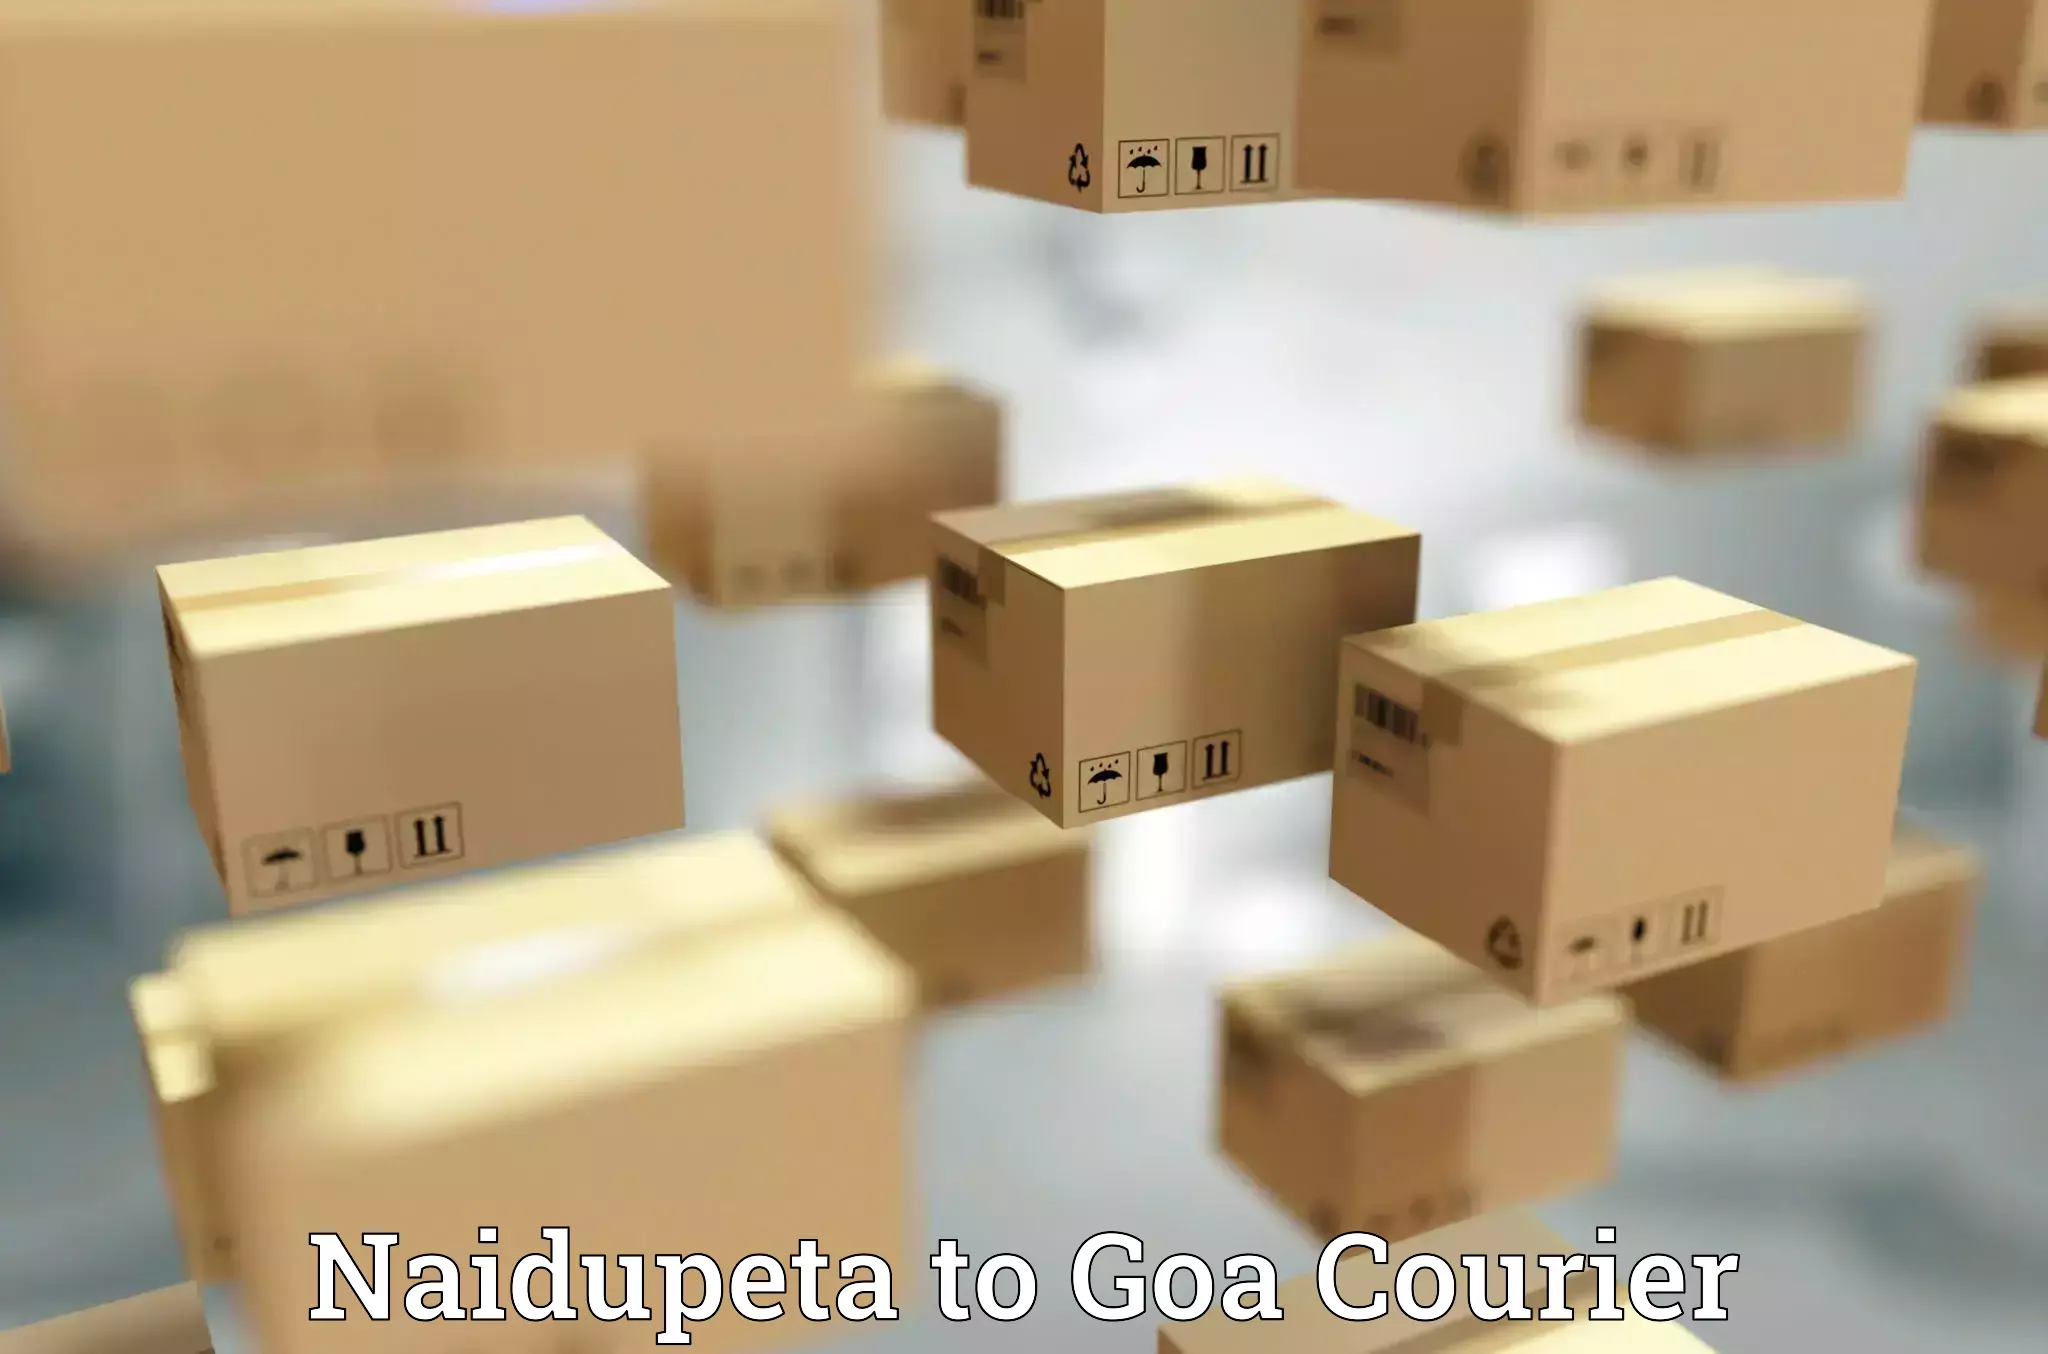 Flexible delivery schedules Naidupeta to Goa